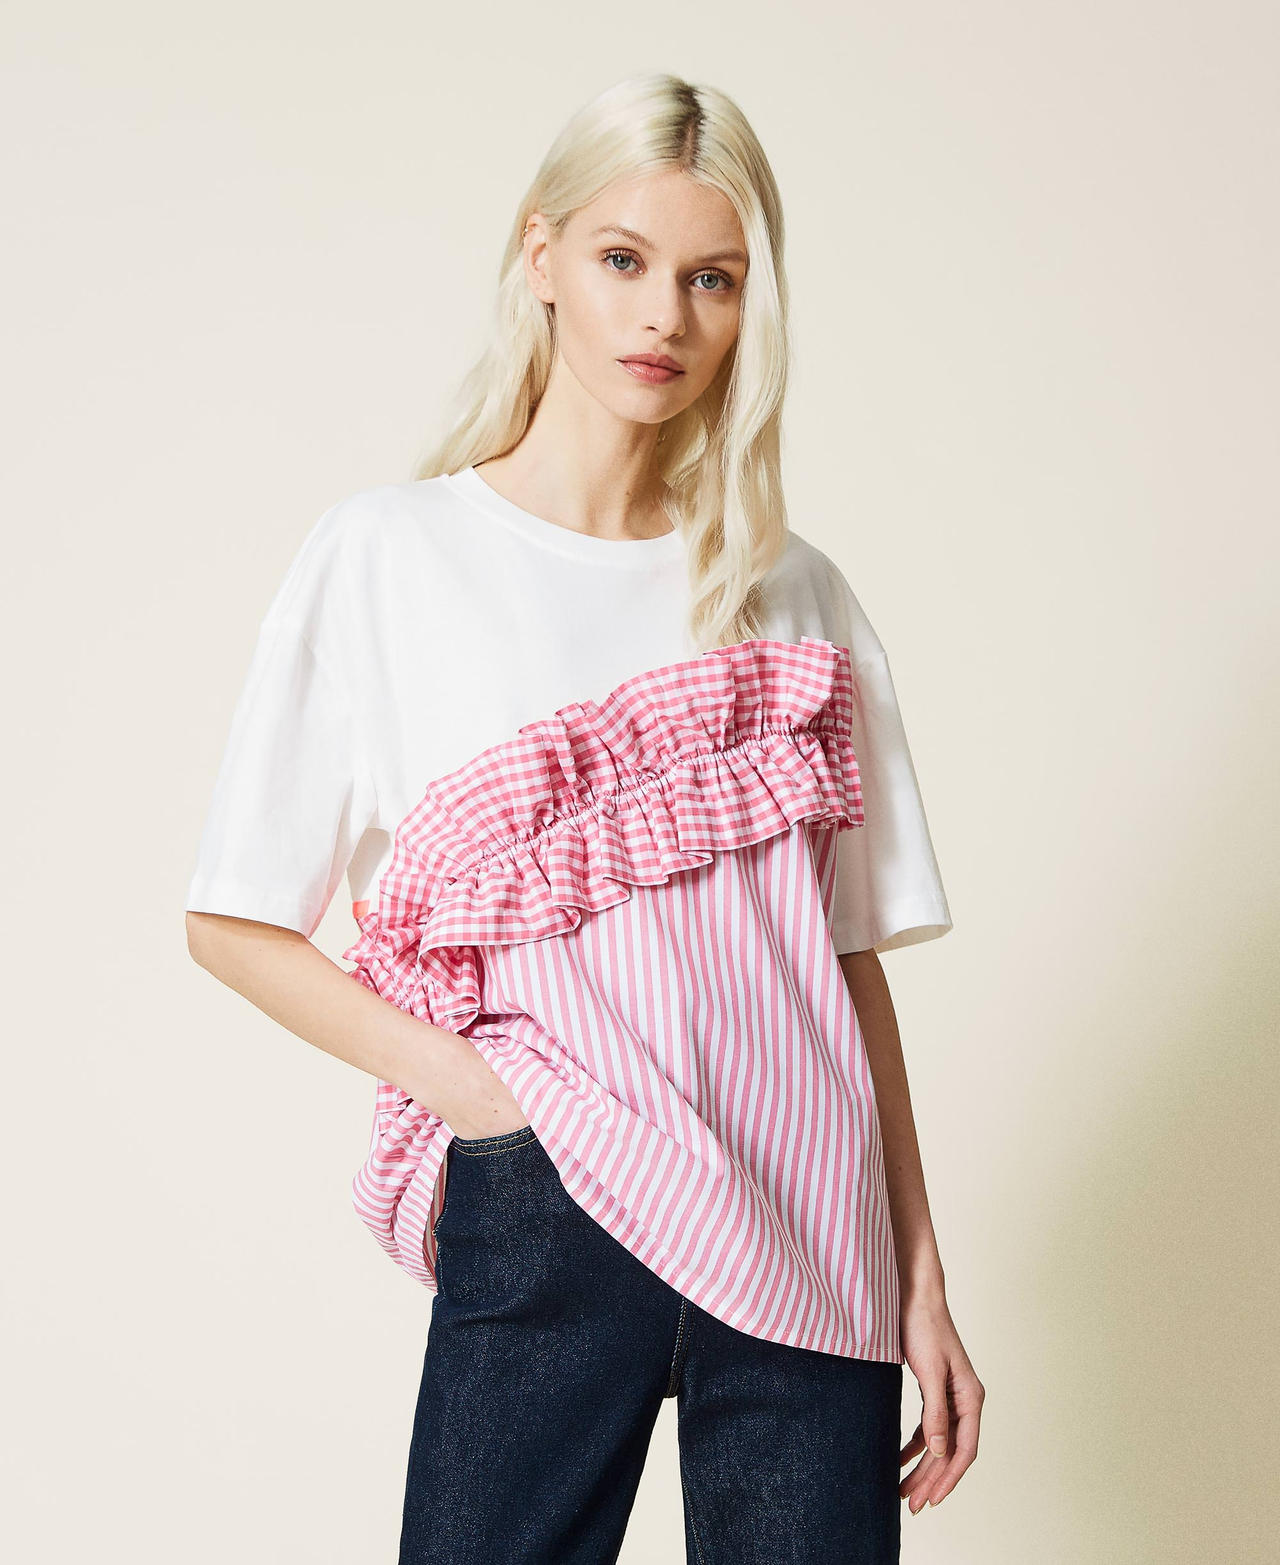 Camiseta con inserción a rayas y Vichy Bicolor Off White / Rosa «Hot Pink» Mujer 221AT2250-02